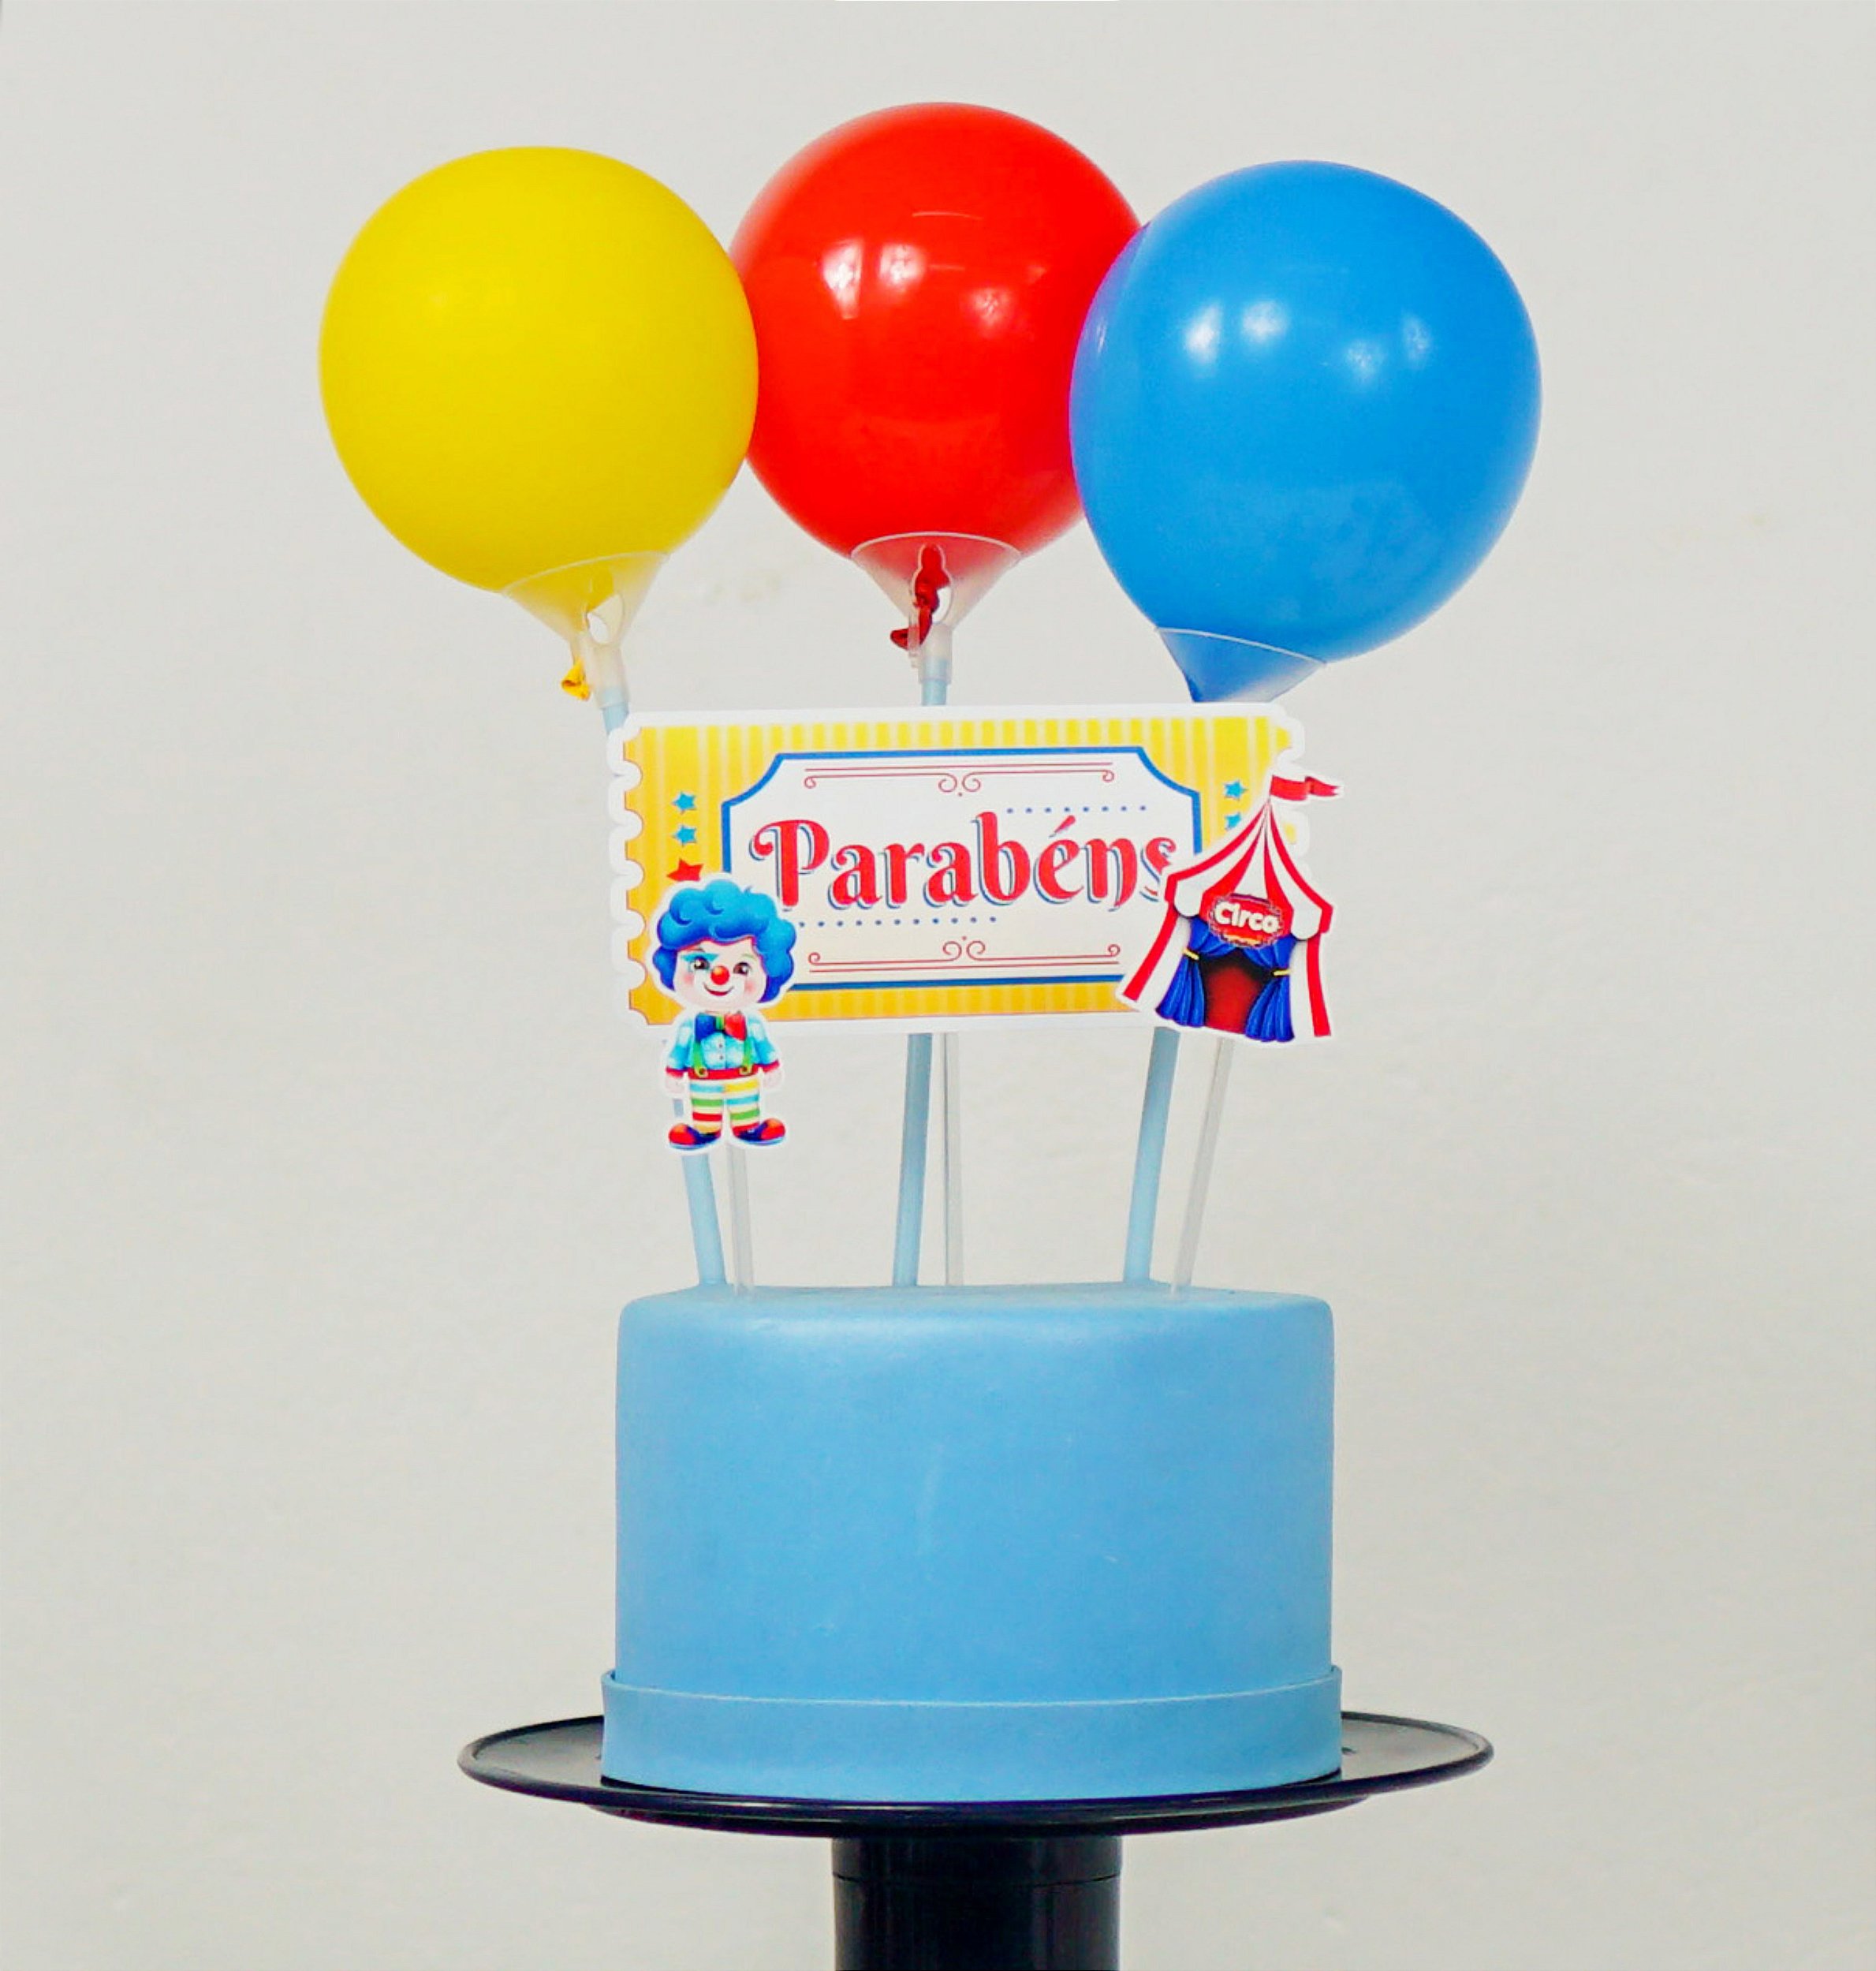 Kit Topo de Bolo com Balão Flork Meme - 01 Kit - JM Festas - Artigos  decorativos de festas